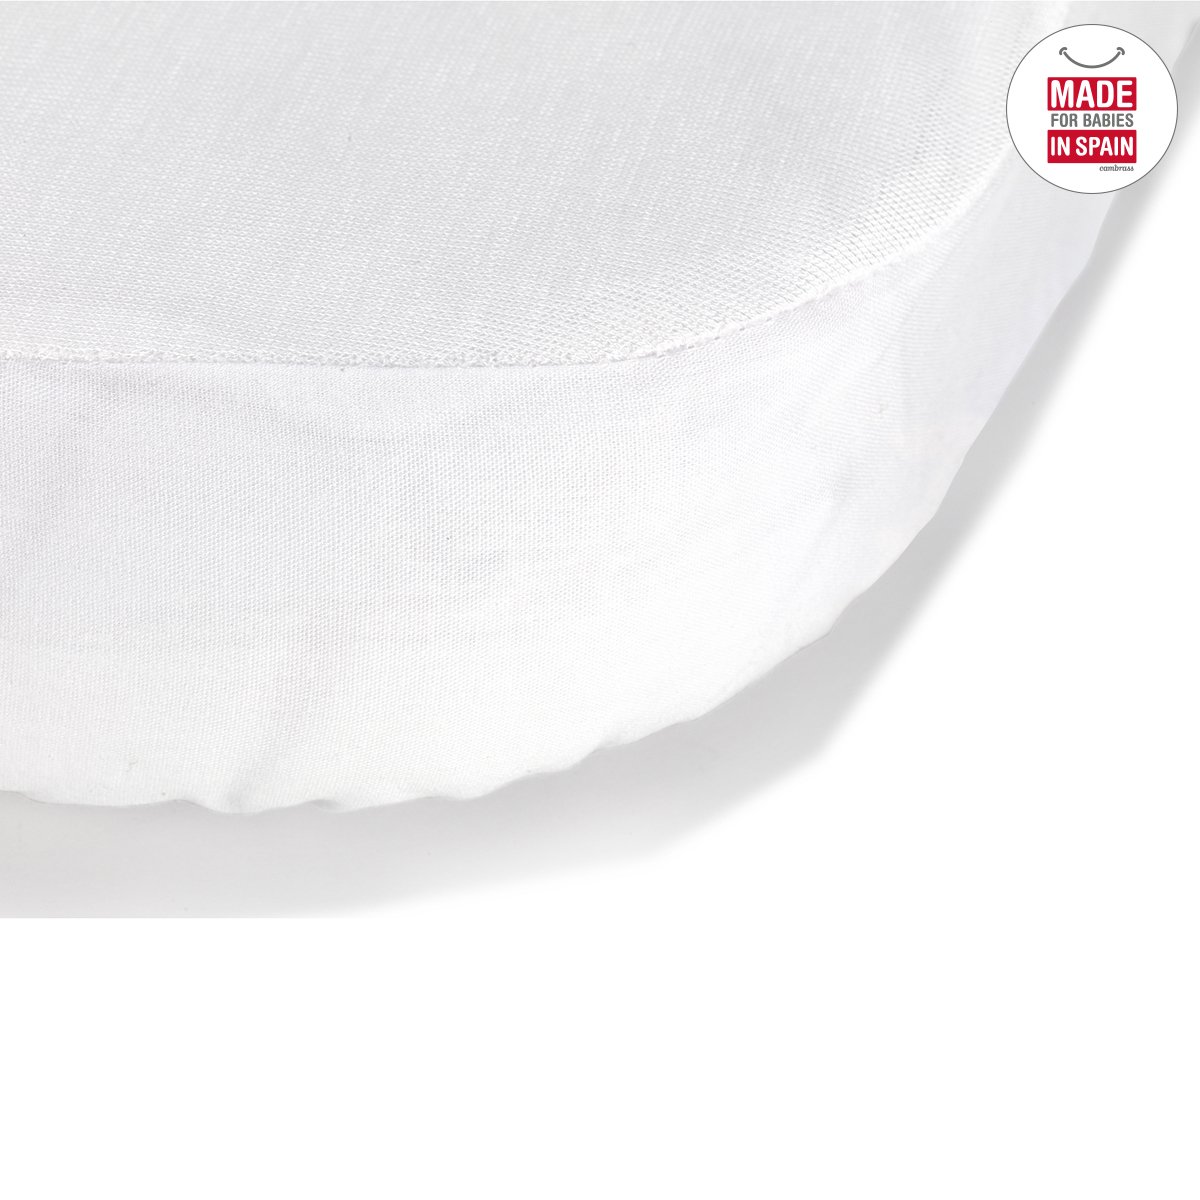 Bajera Impermeable tencel cuna blanco Cambrass La sábana ajustable confeccionada con fibras de TENCEL™, impermeable y transpirable (para cuna 60) de Cambrass, funciona como una práctica bajera. Fabricado en España. Por Cambrass.